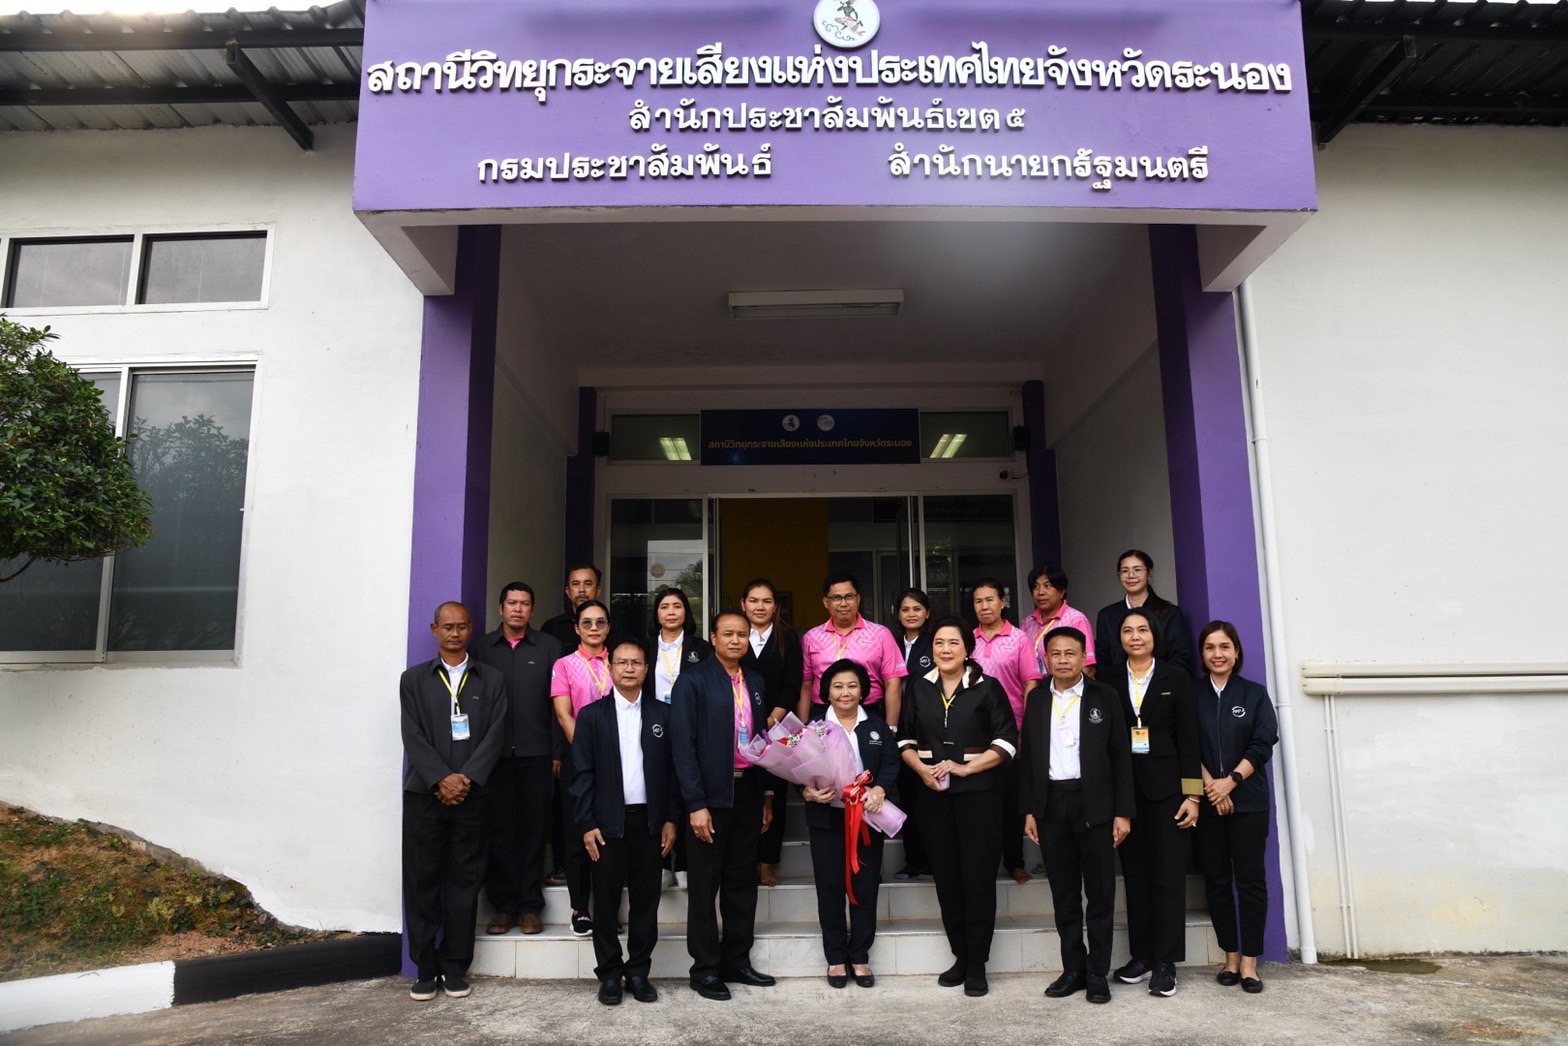 รัฐมนตรี “พวงเพ็ชร”  ตรวจเยี่ยมสถานีวิทยุกระจายเสียงแห่งประเทศไทยจังหวัดระนอง พร้อมมอบนโยบายการประชาสัมพันธ์และตรวจเยี่ยมห้องส่งออกอากาศ